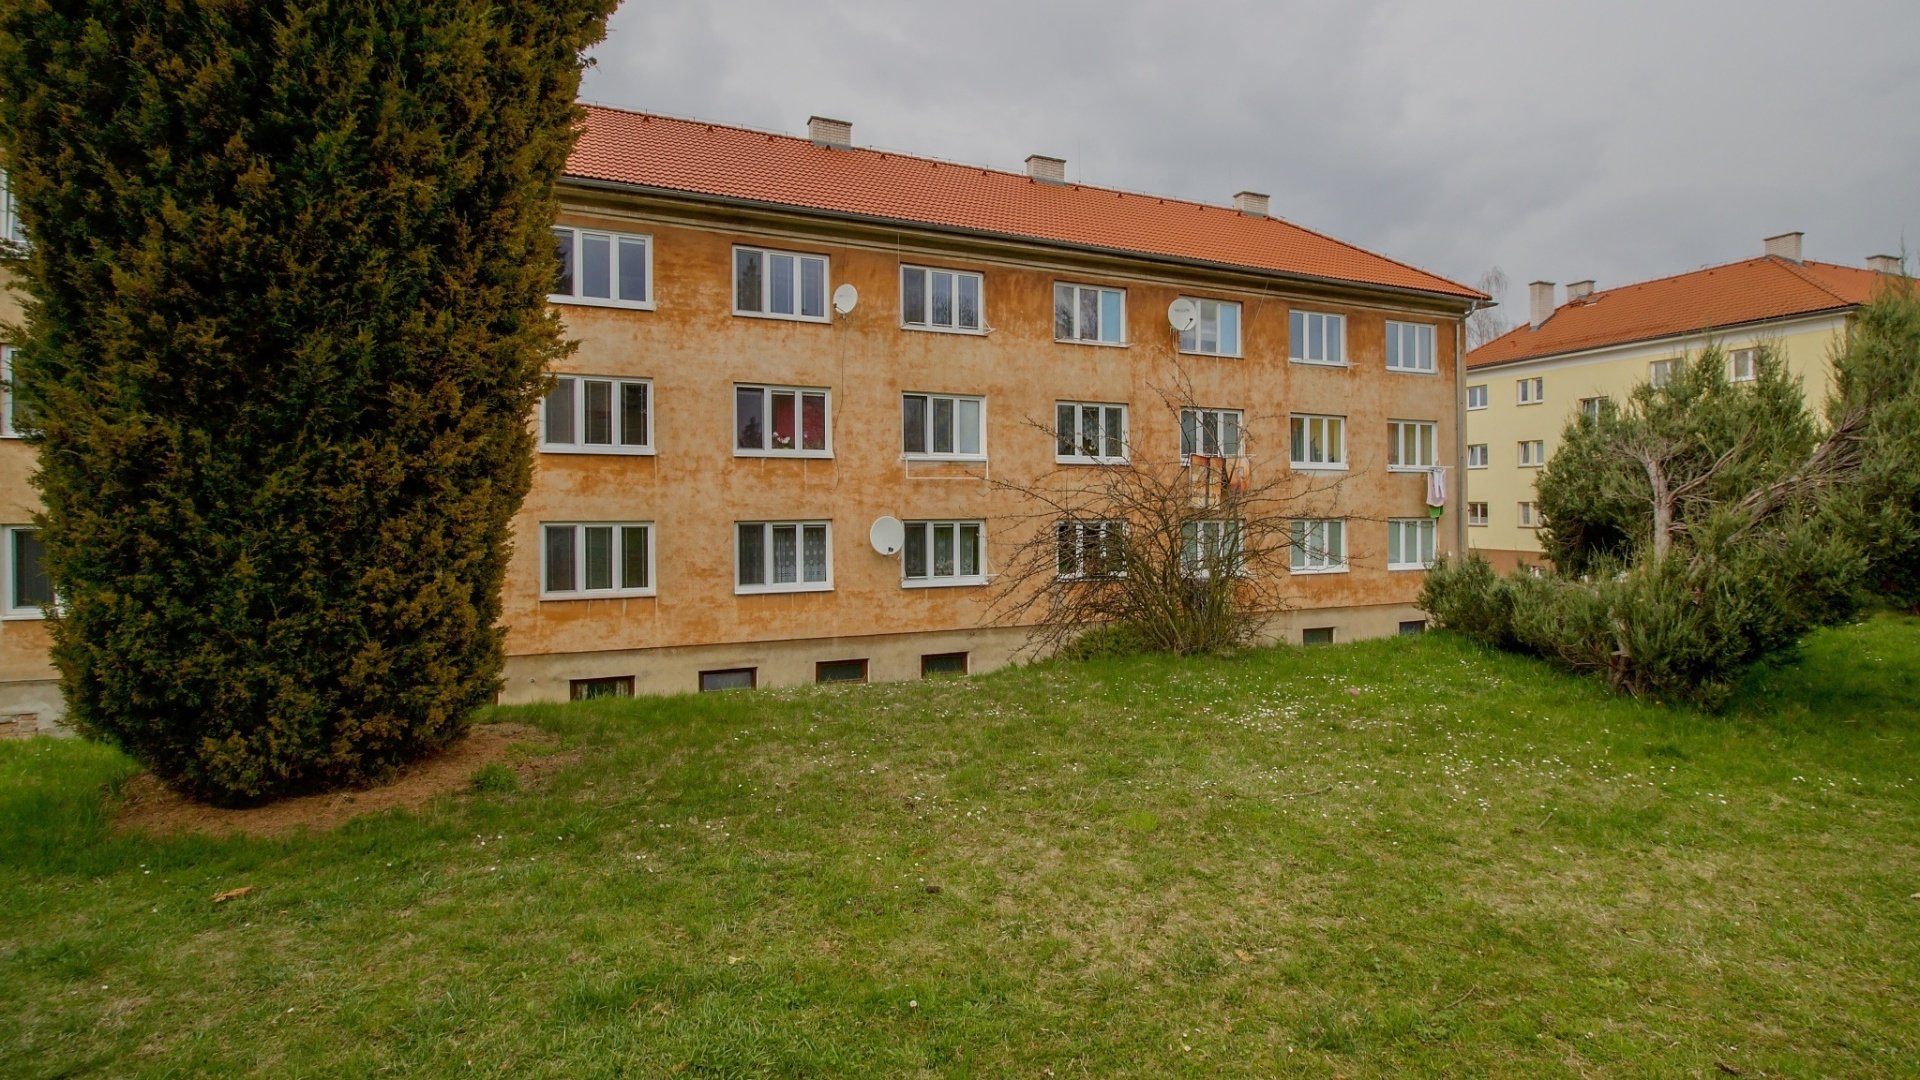 Pronájem světlého bytu 2+1, 57m², Hořovice